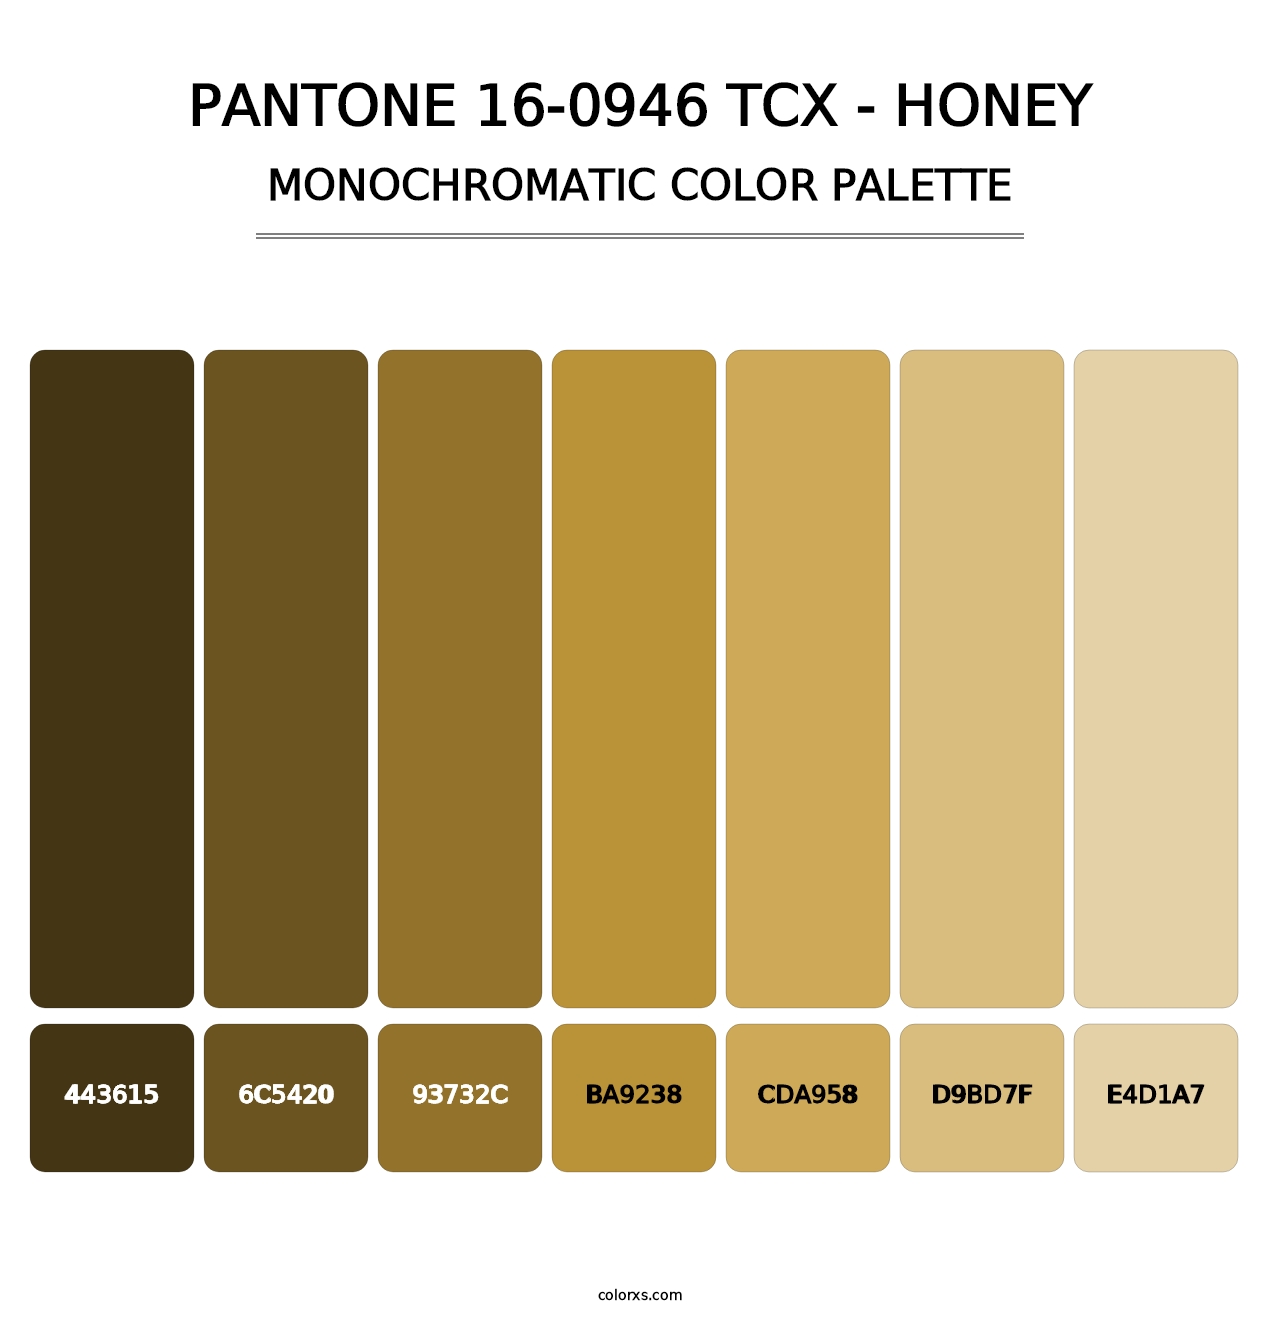 PANTONE 16-0946 TCX - Honey - Monochromatic Color Palette